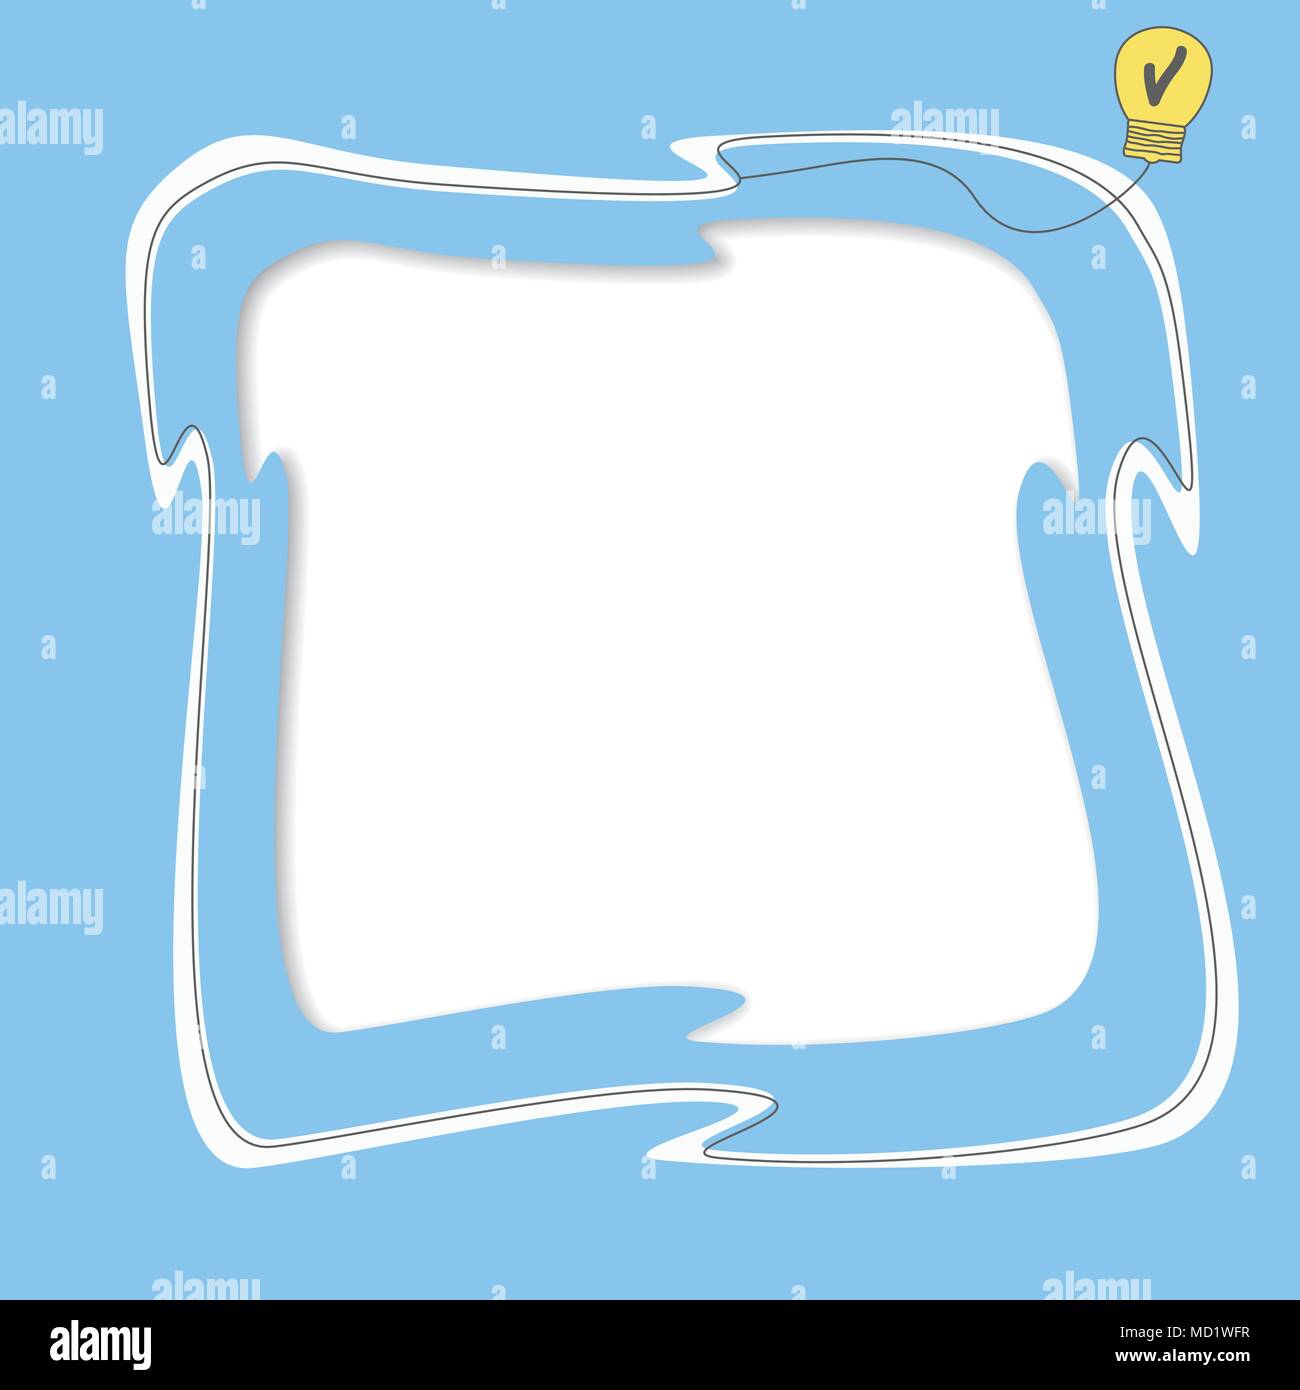 Weißer Text frame, gelbe Glühbirne Idee mit Überprüfungen auf blauem Hintergrund Stock Vektor